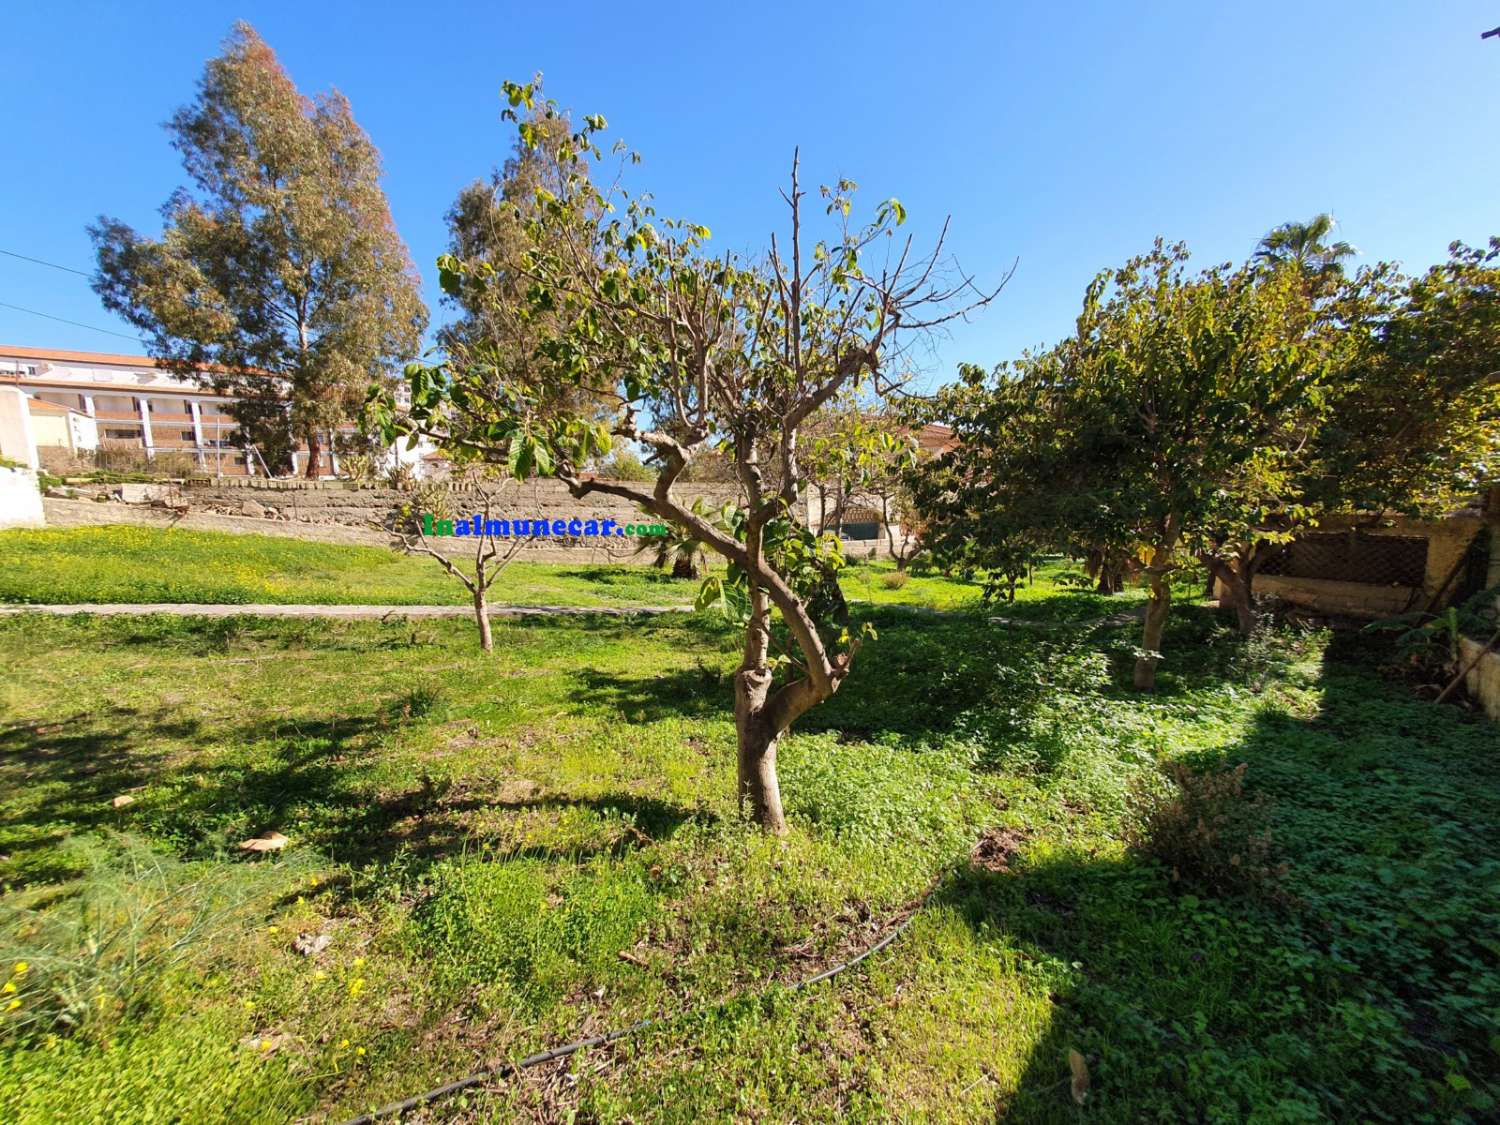 Villa zum Verkauf in Almuñecar, in der Nähe des Strandes von San Cristobal mit einem riesigen Garten mit Obstbäumen